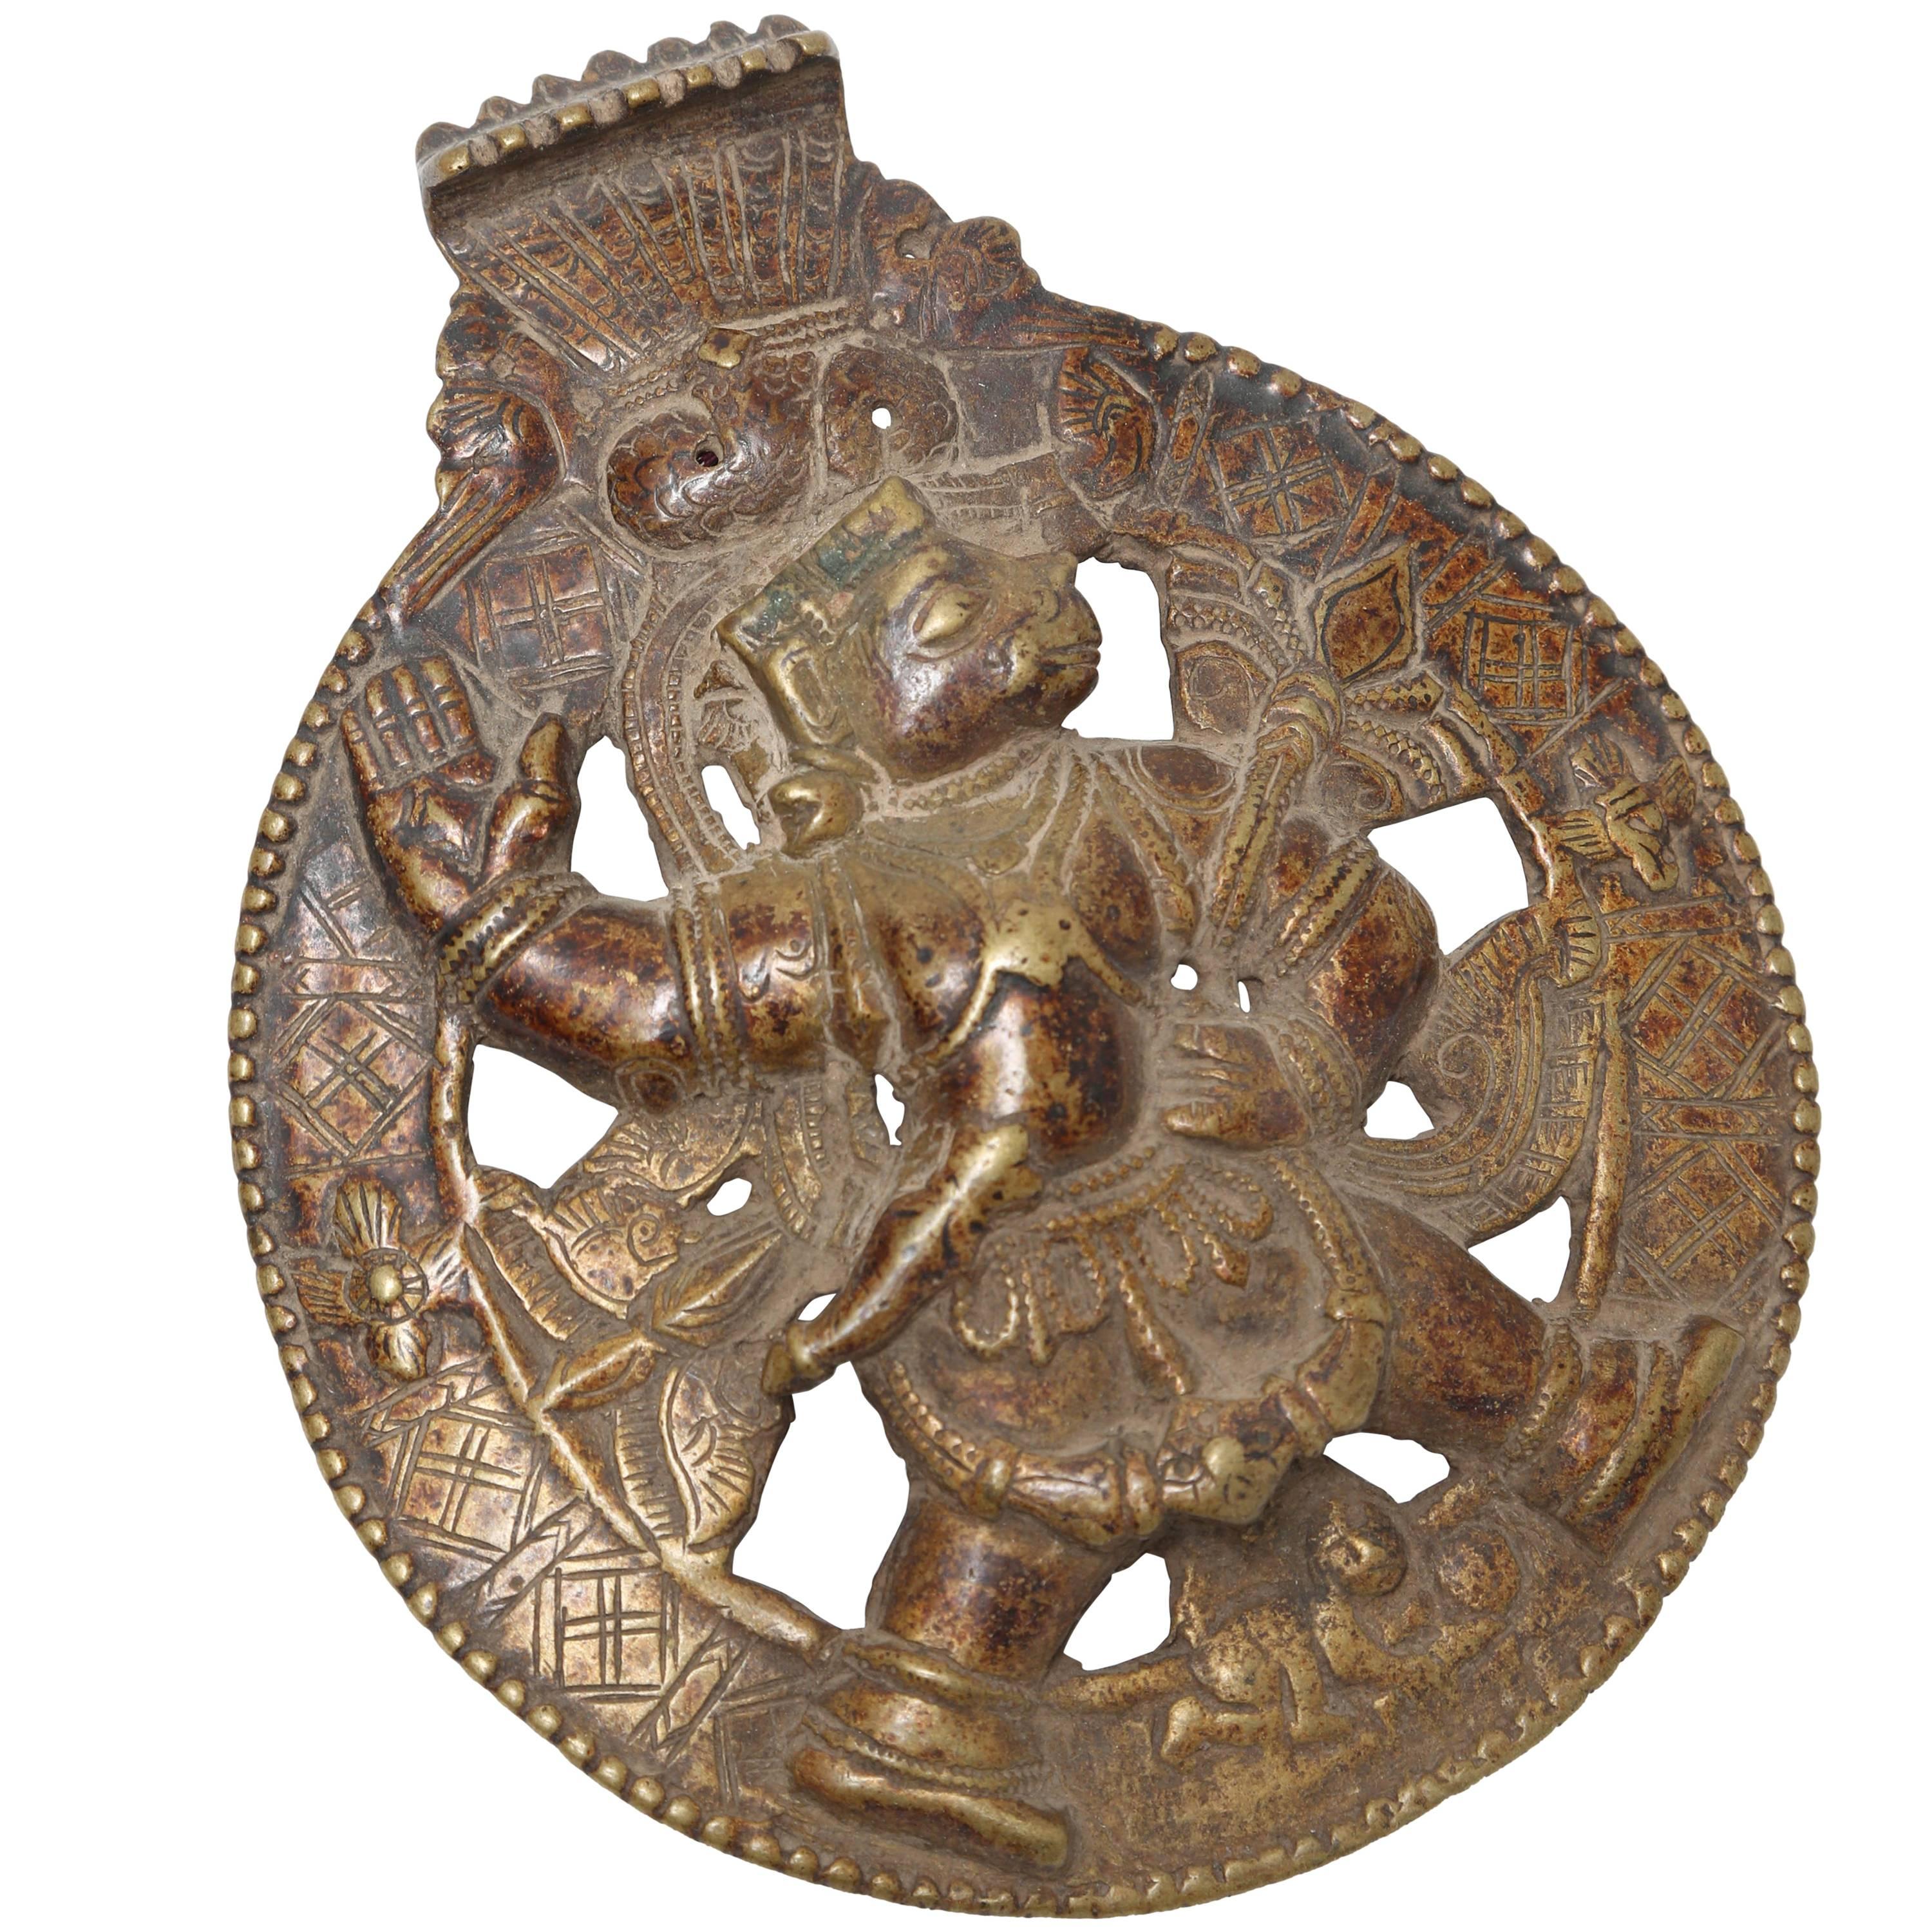 Rondell aus Bronze und Kupferlegierung von Hanuman, dem hinduistischen Affengott